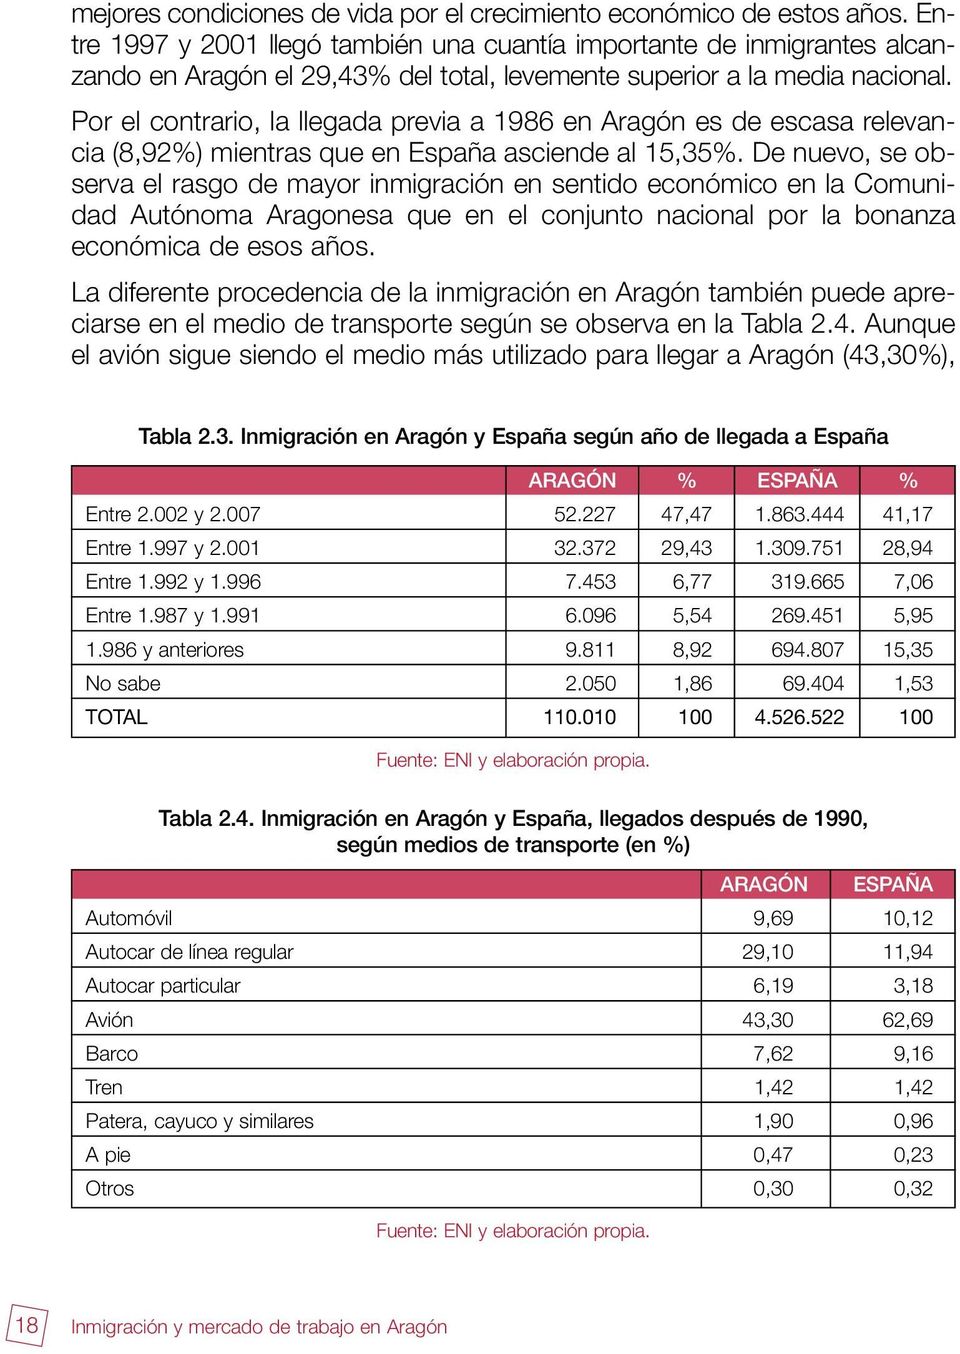 Por el contrario, la llegada previa a 1986 en Aragón es de escasa relevancia (8,92%) mientras que en España asciende al 15,35%.